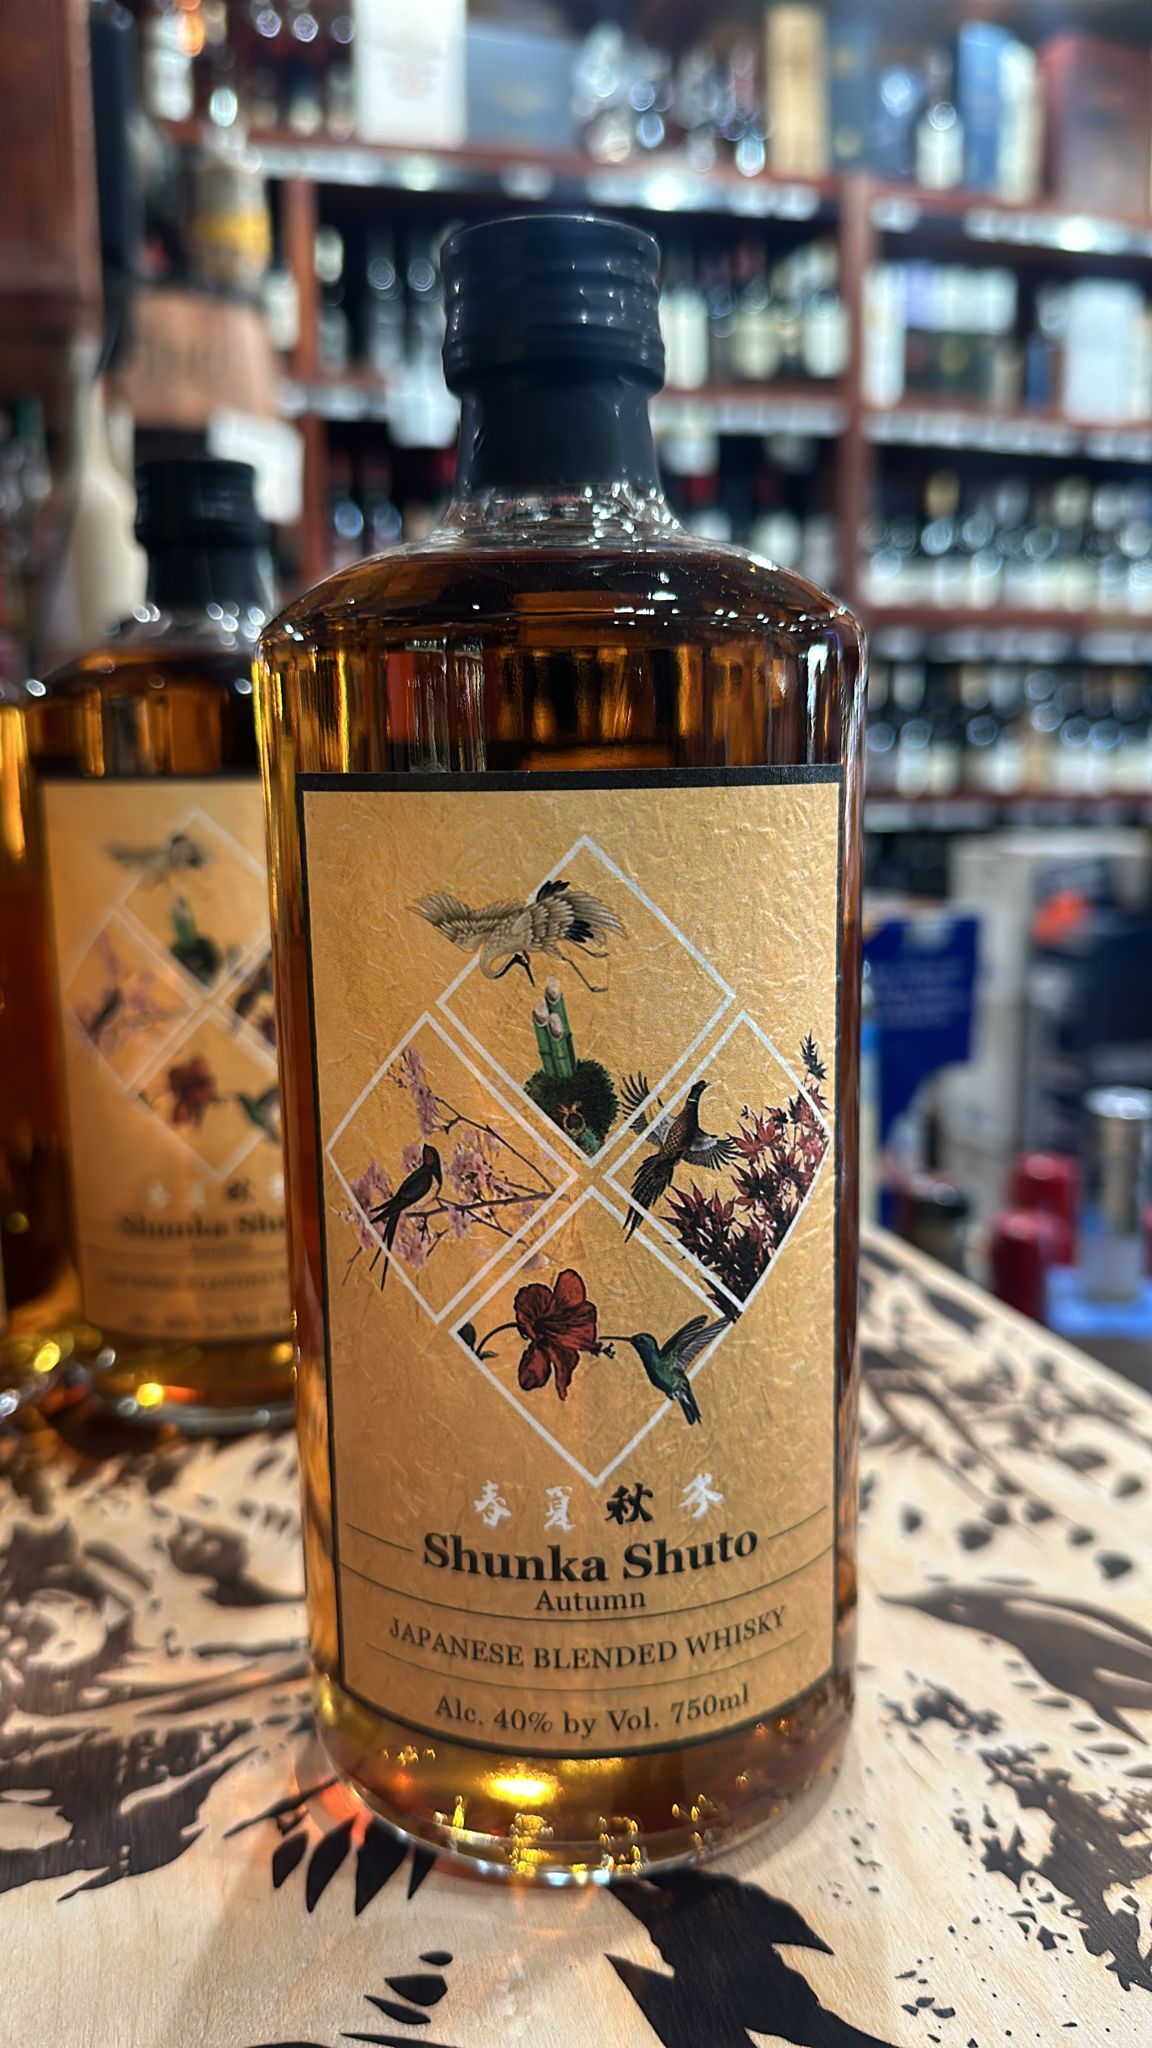 Shunka Shuto Autumn Fall Edition Japanese Blended Whisky 750ml